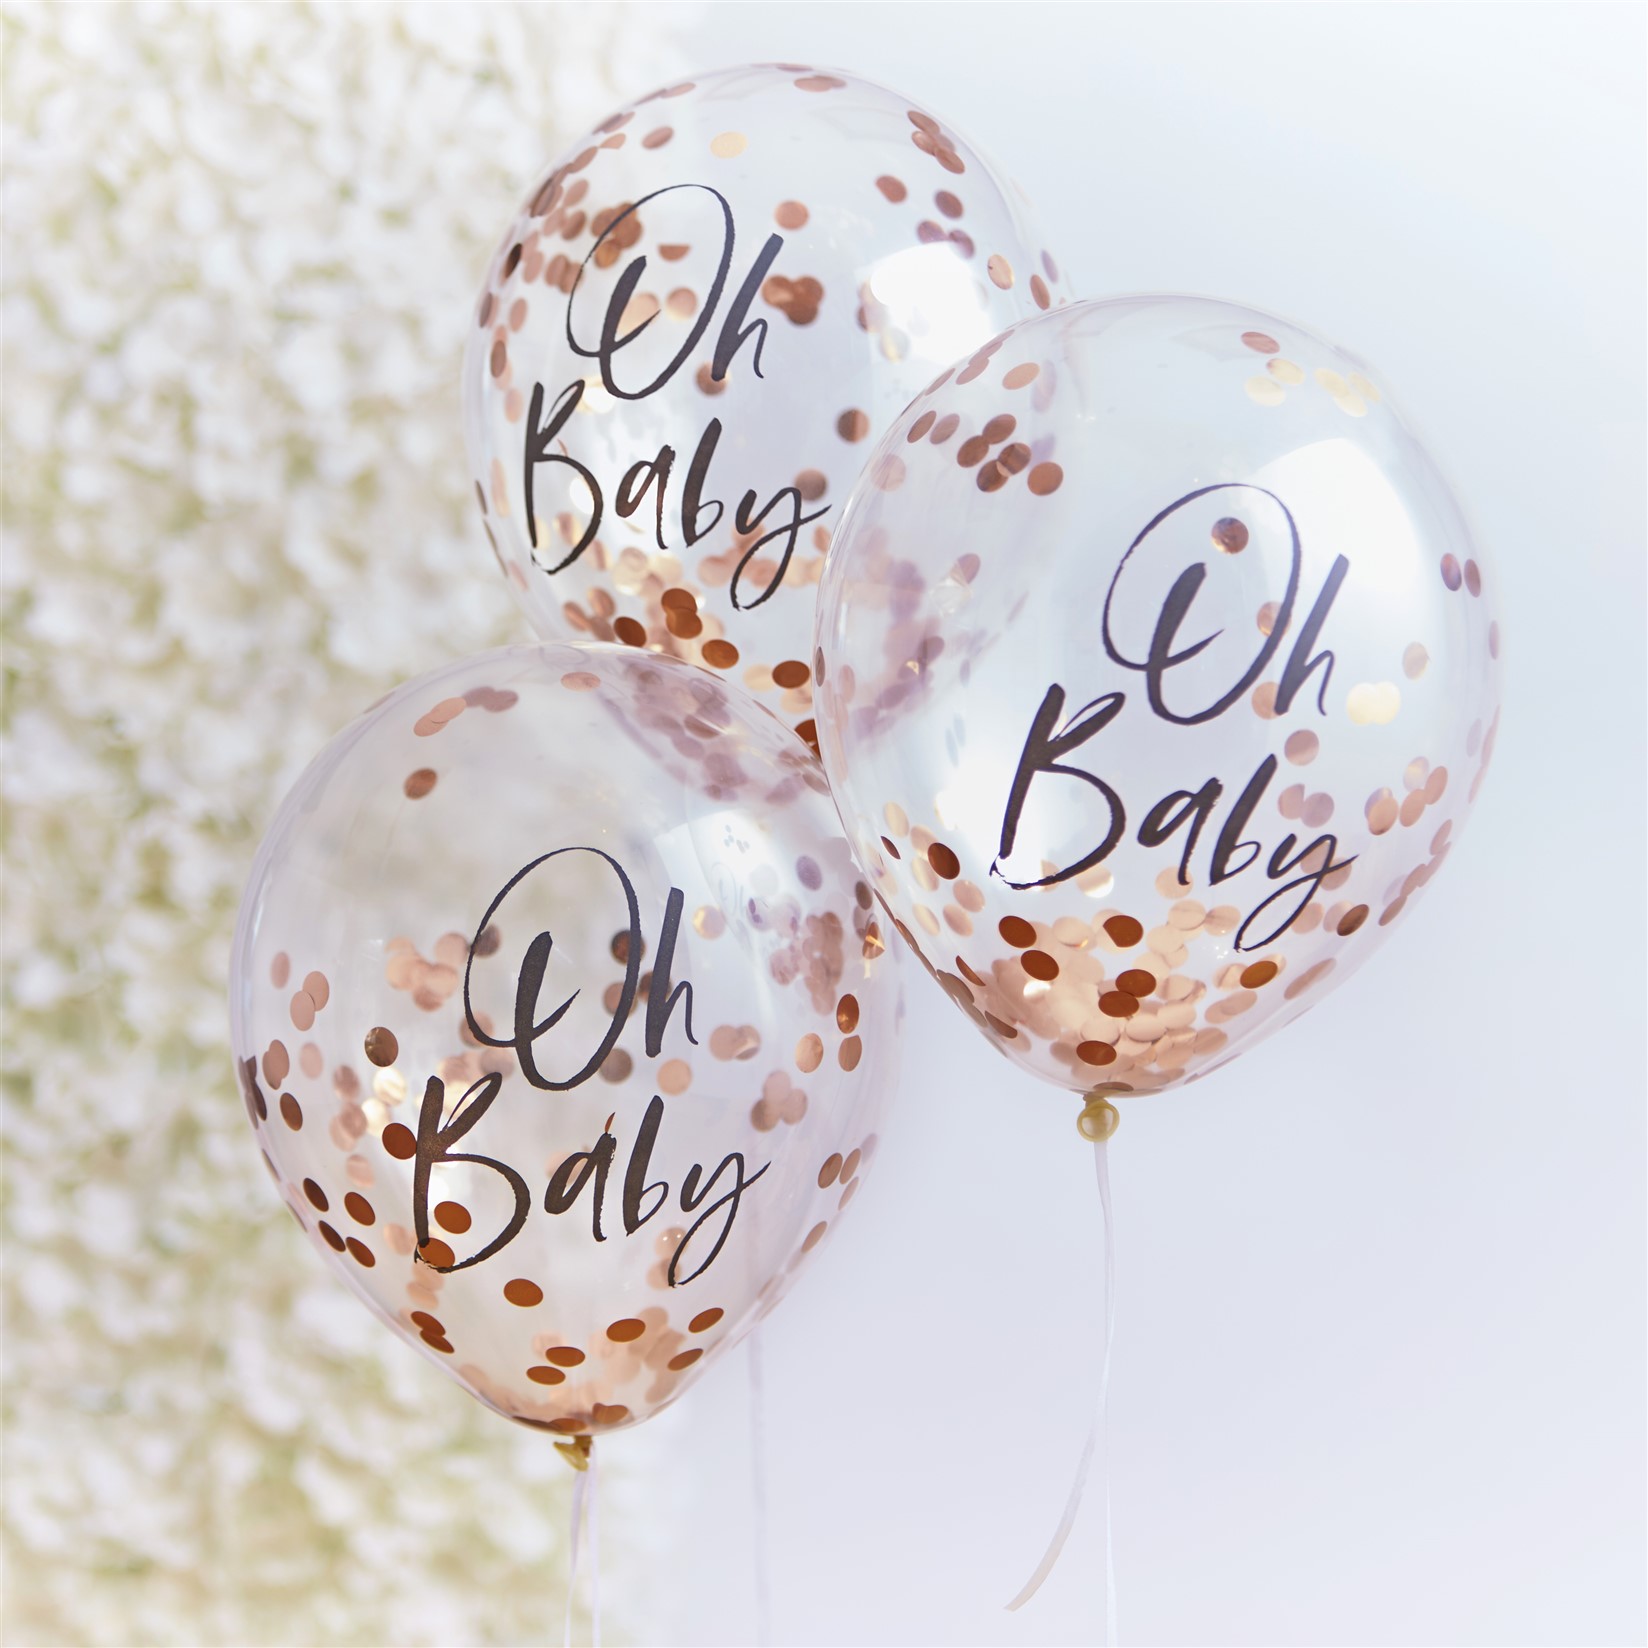 Μπαλόνια Latex με Rose Gold Κονφετί Oh Baby – 5 Τεμάχια